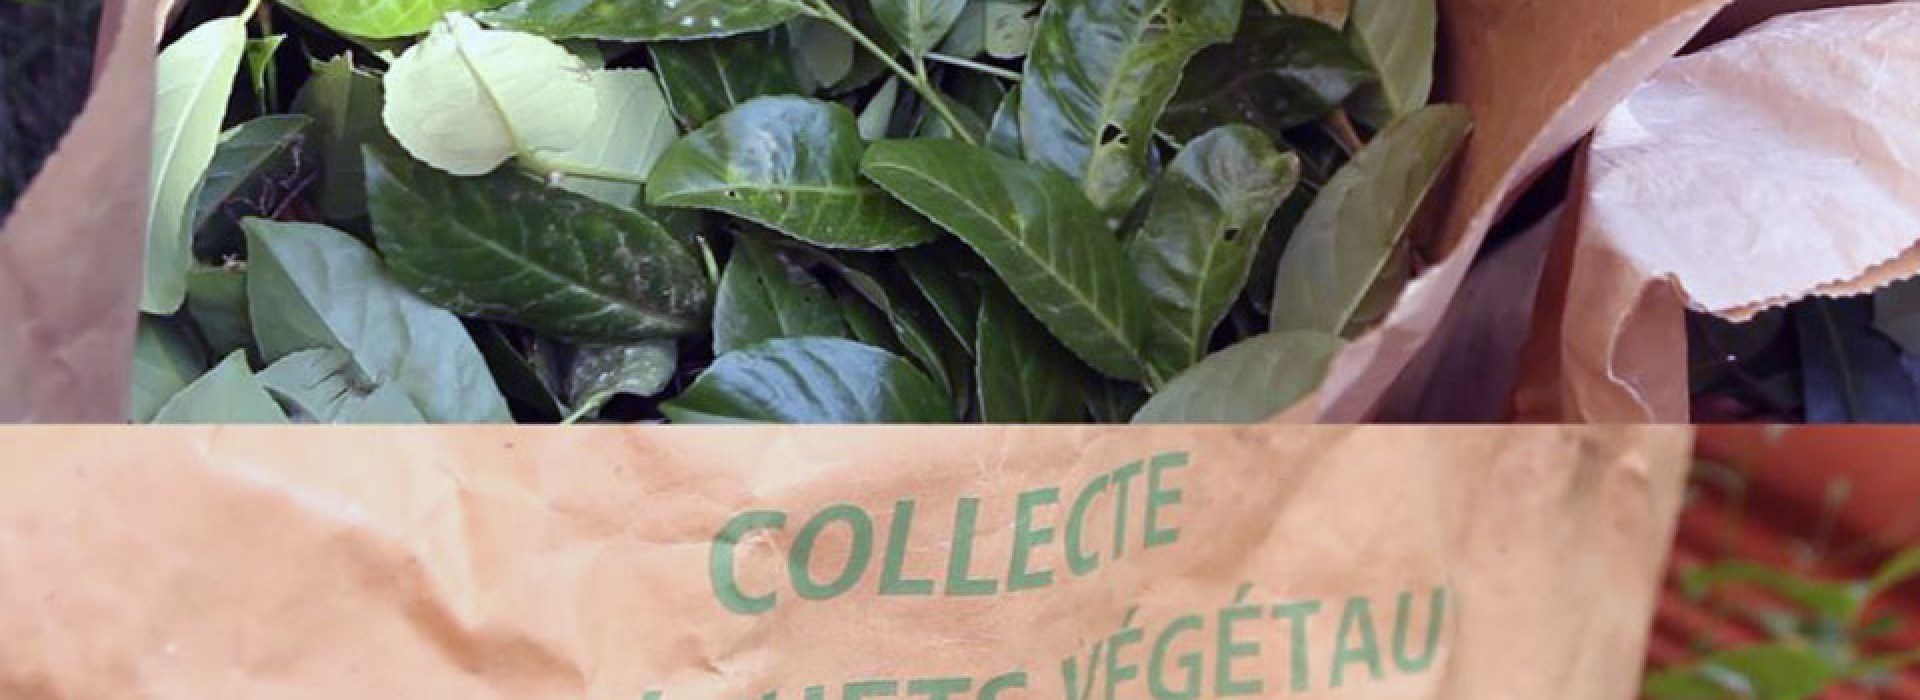 Distribution des sacs de collecte des végétaux